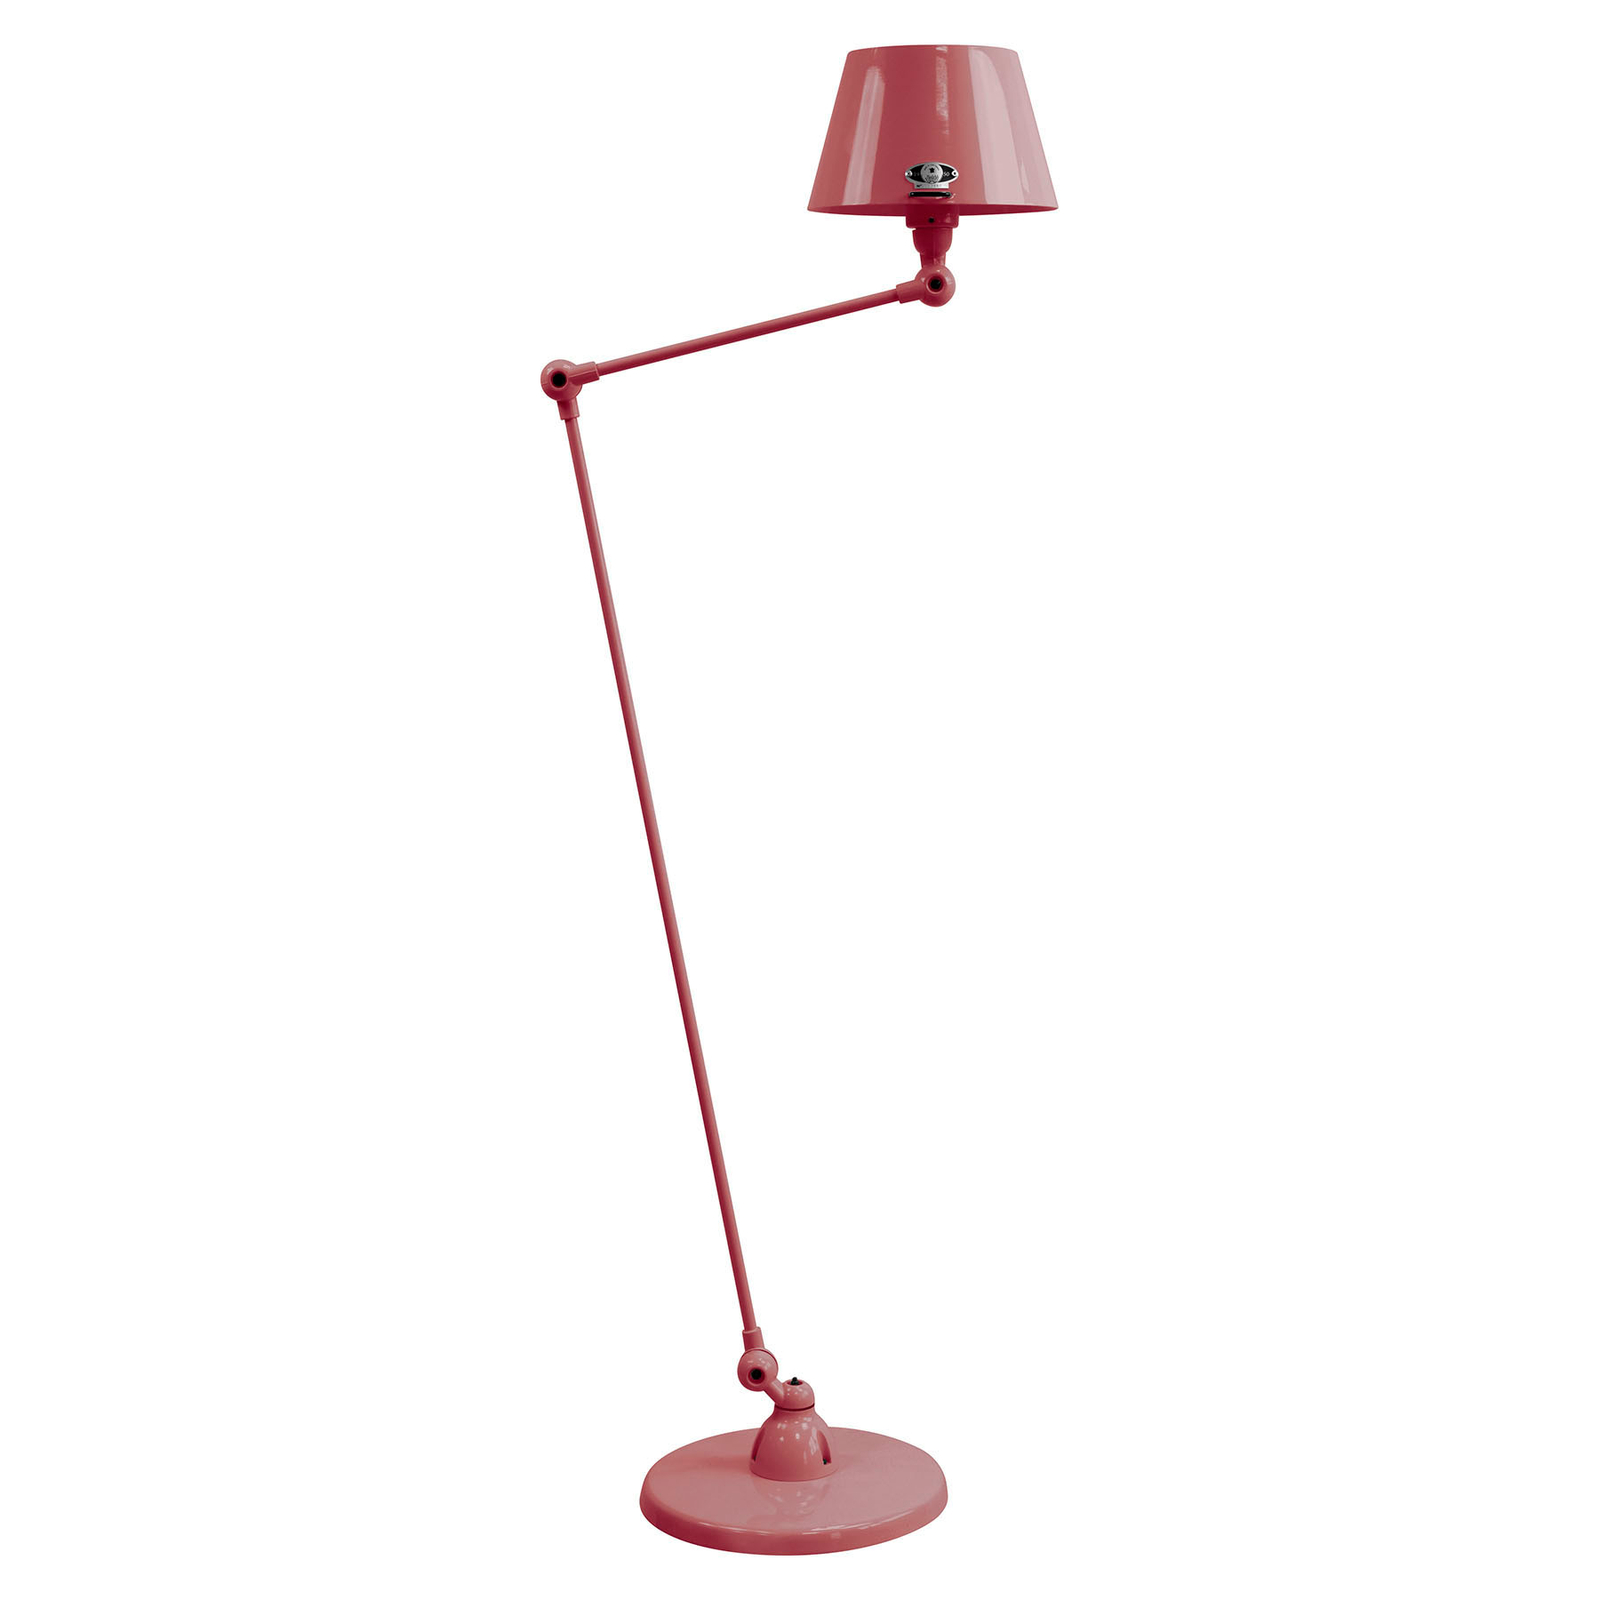 Jieldé Aicler AID833 80+30 cm floor lamp, burgundy